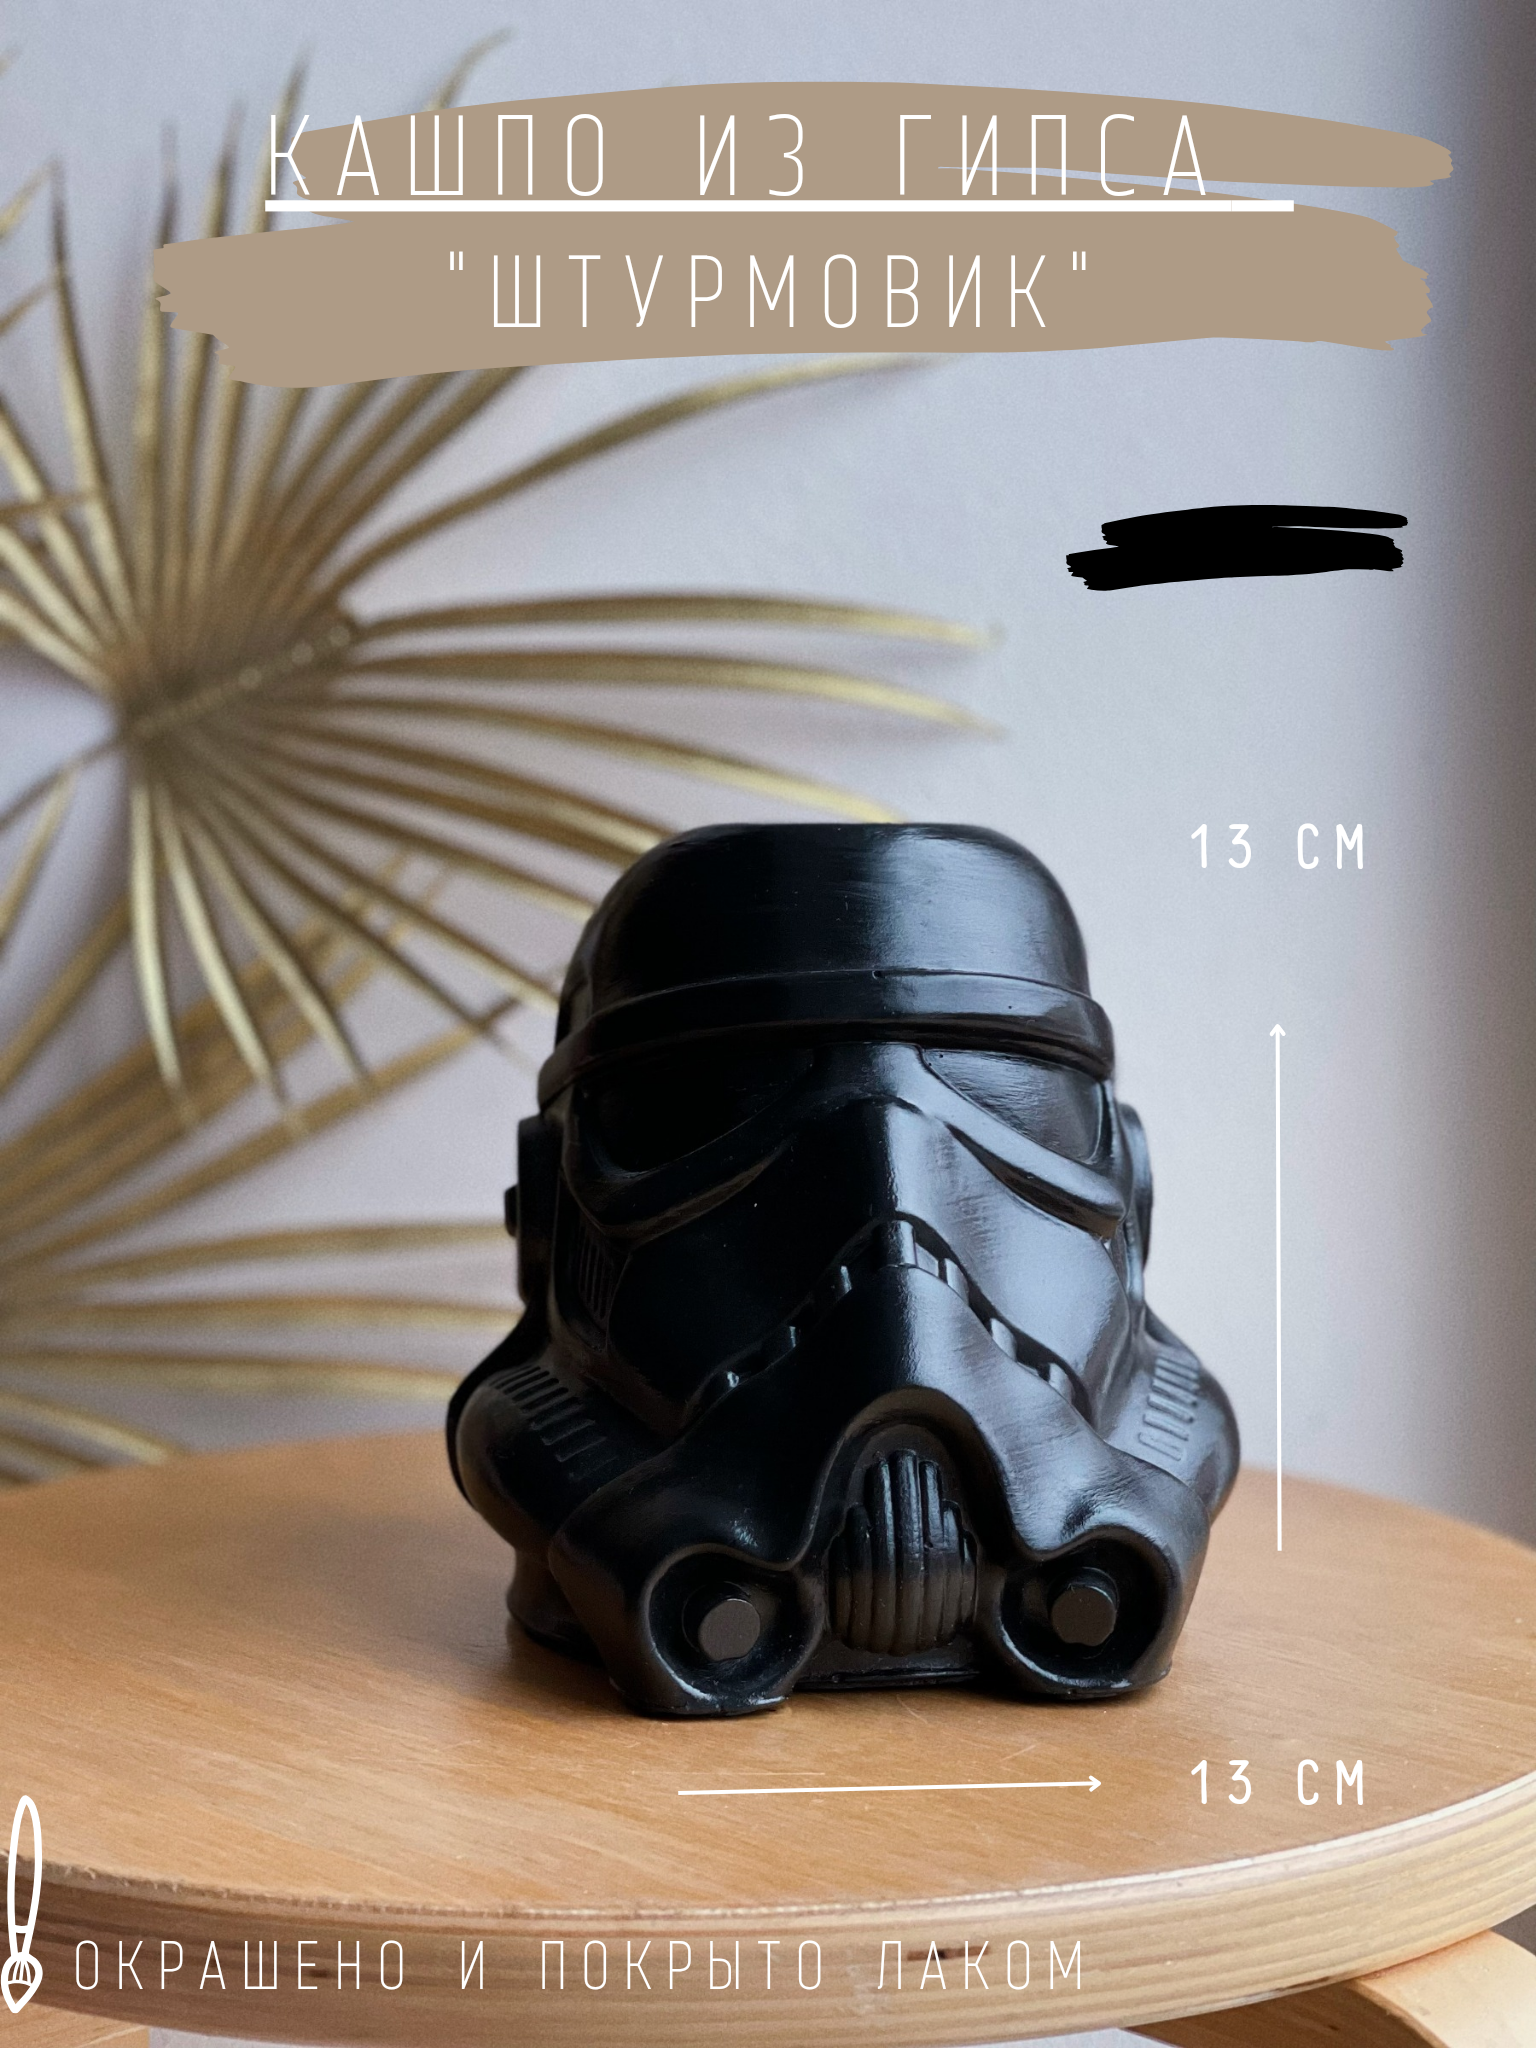 Кашпо Штурмовик черный, 13 см органайзер статуэтка гипс